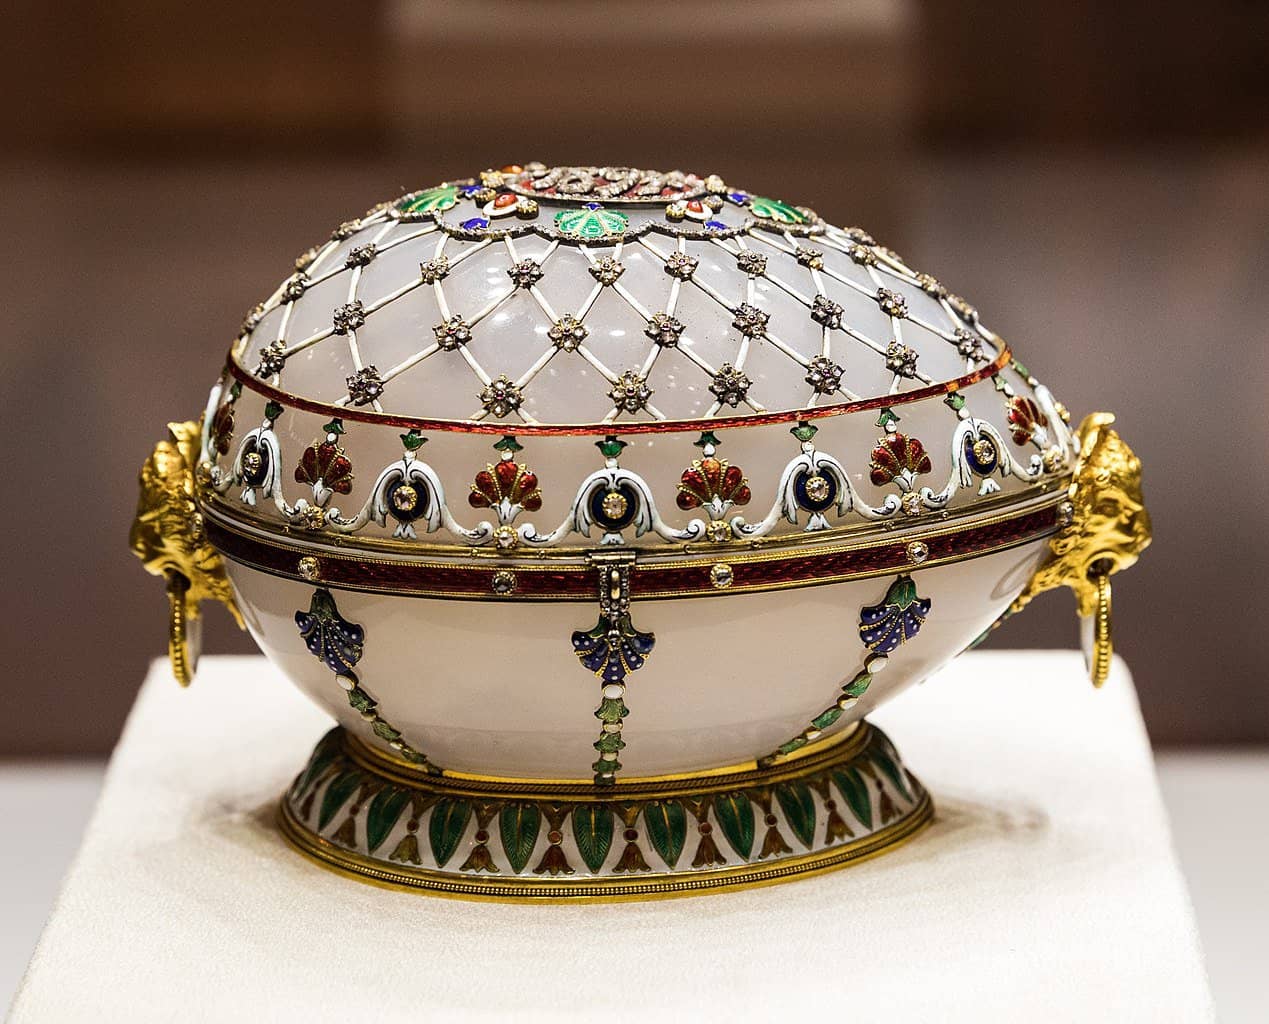 The Renaissance Faberge Egg